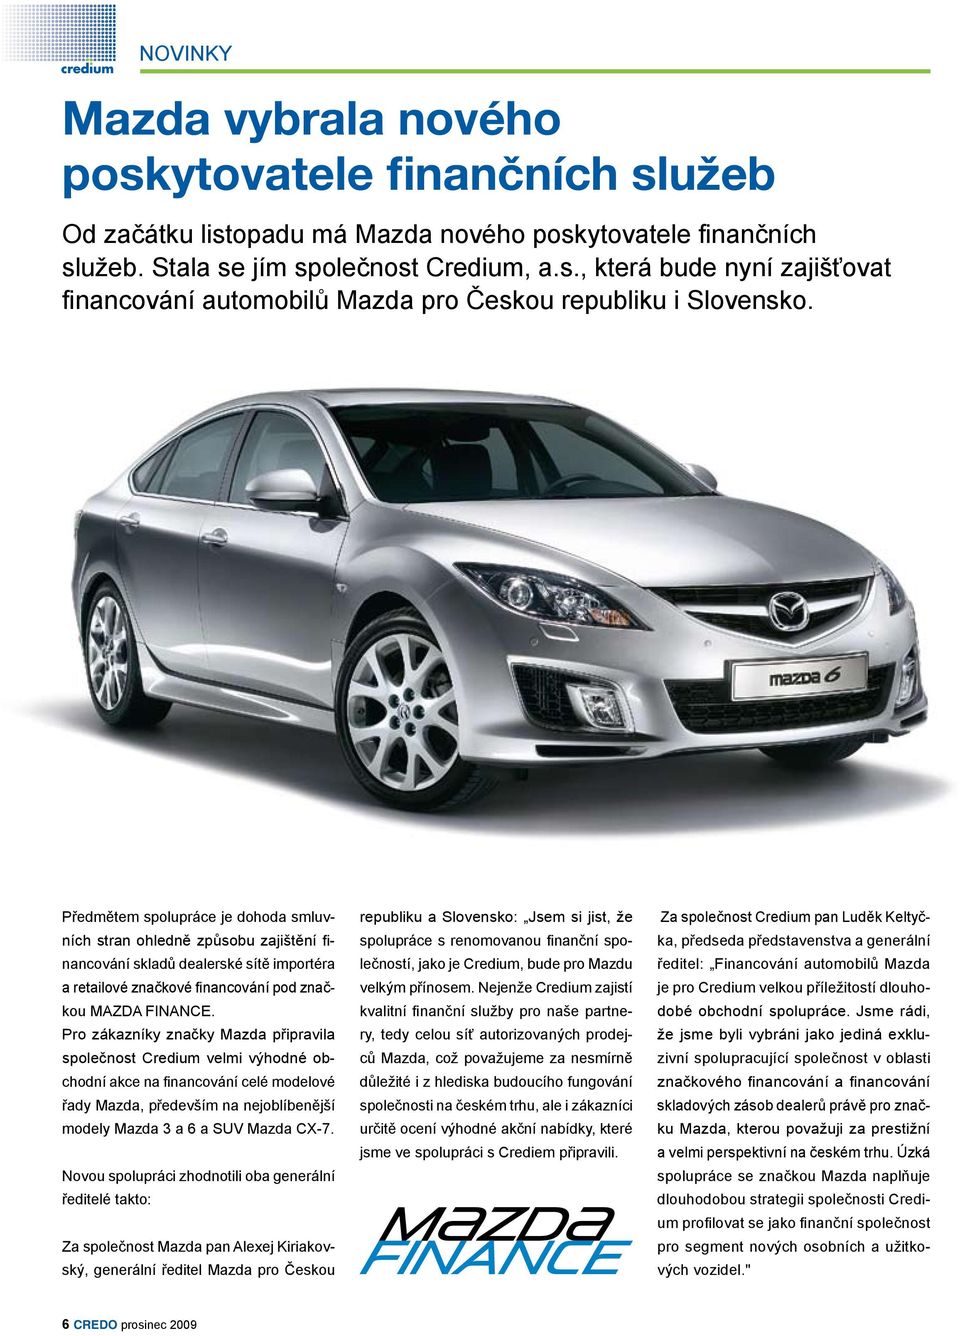 Pro zákazníky značky Mazda připravila společnost Credium velmi výhodné obchodní akce na financování celé modelové řady Mazda, především na nejoblíbenější modely Mazda 3 a 6 a SUV Mazda CX-7.